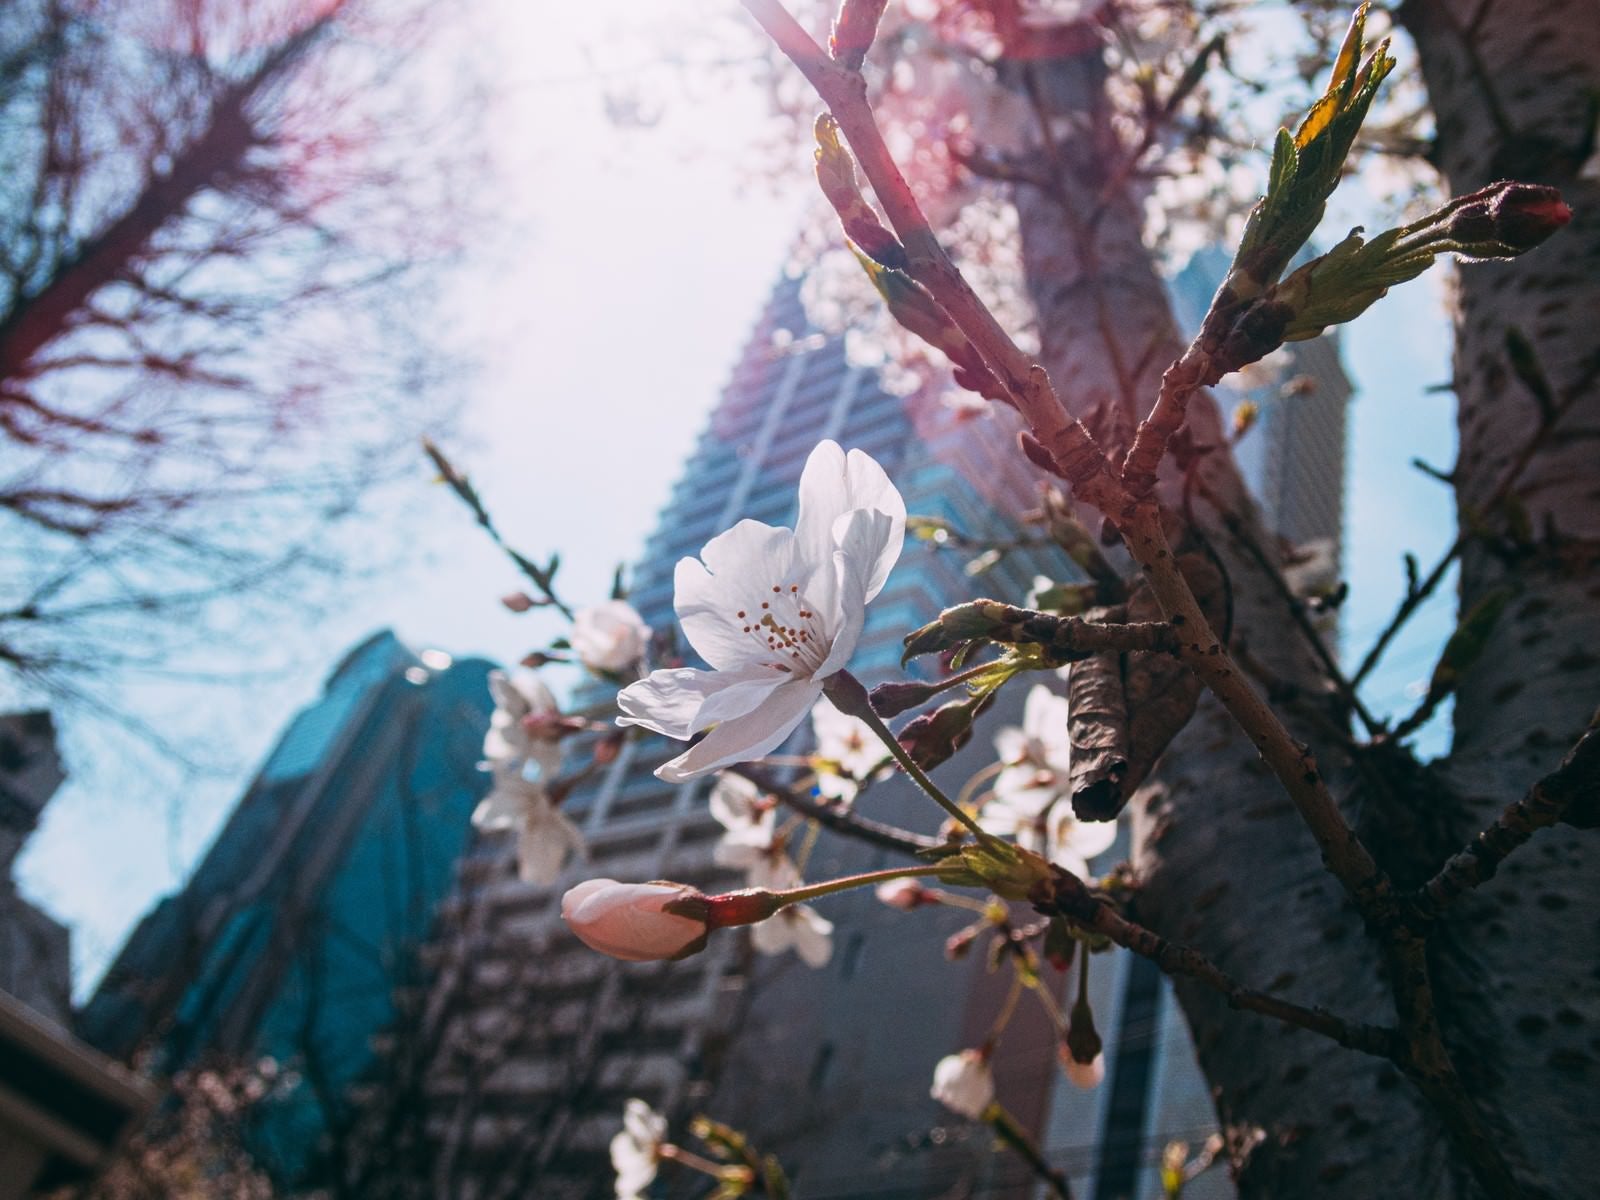 「都会のビルの下で開花する桜」の写真